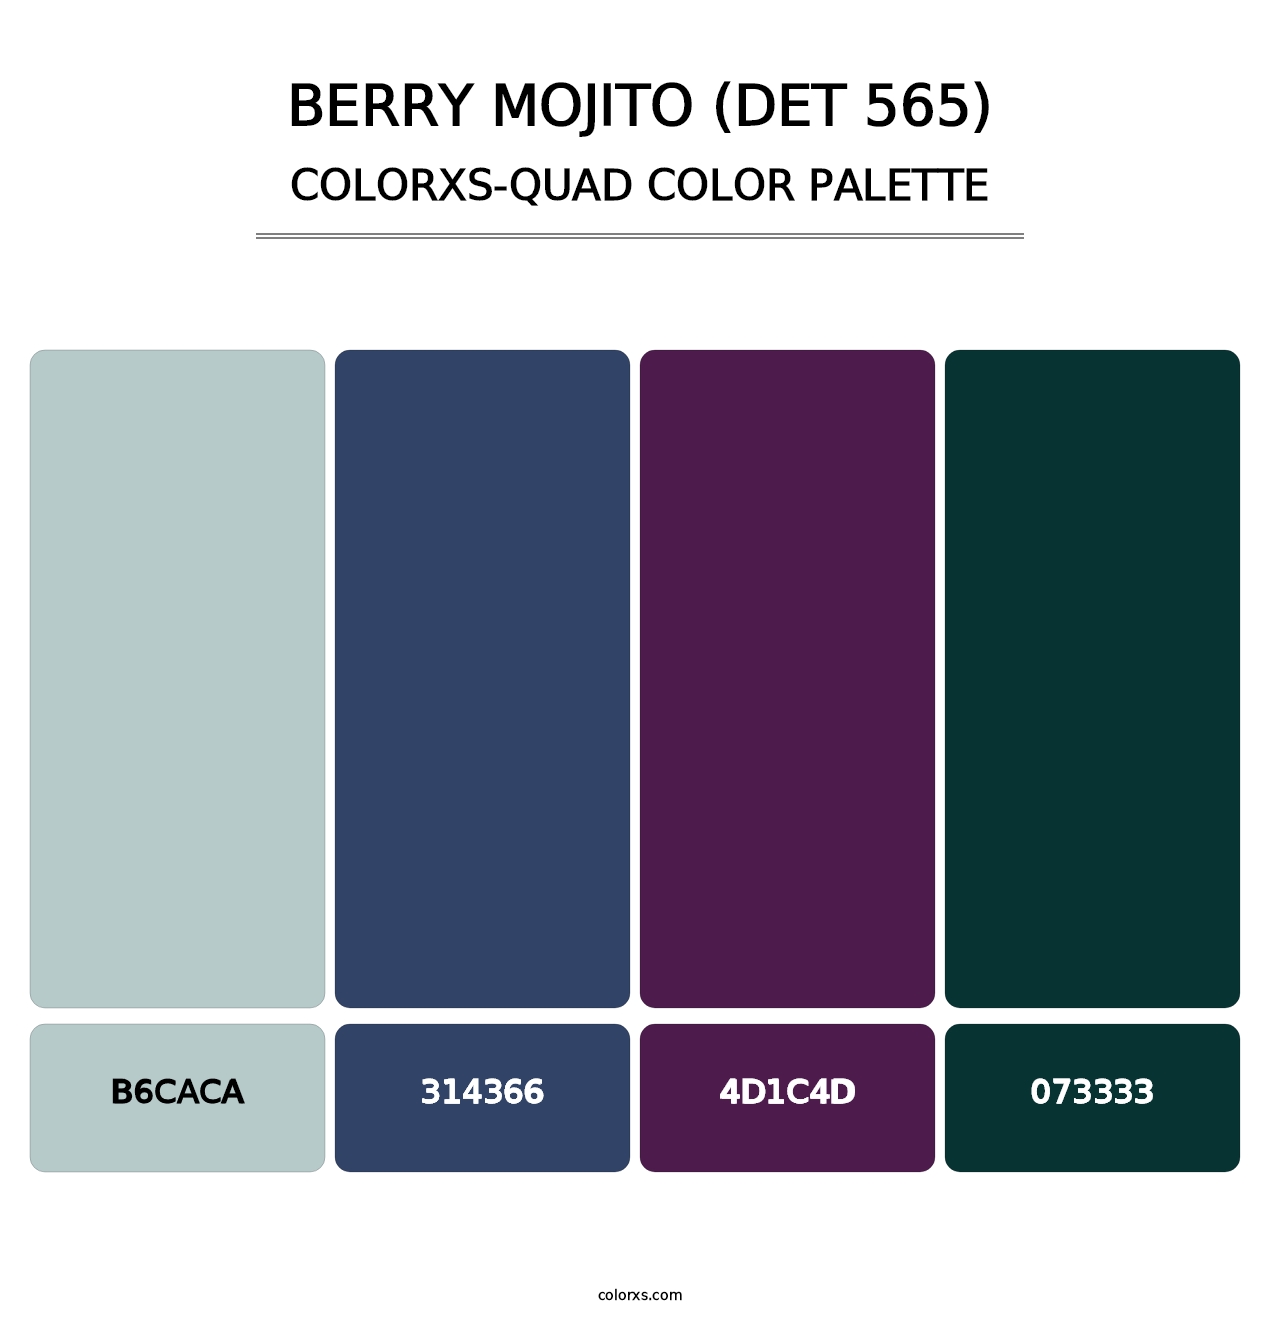 Berry Mojito (DET 565) - Colorxs Quad Palette